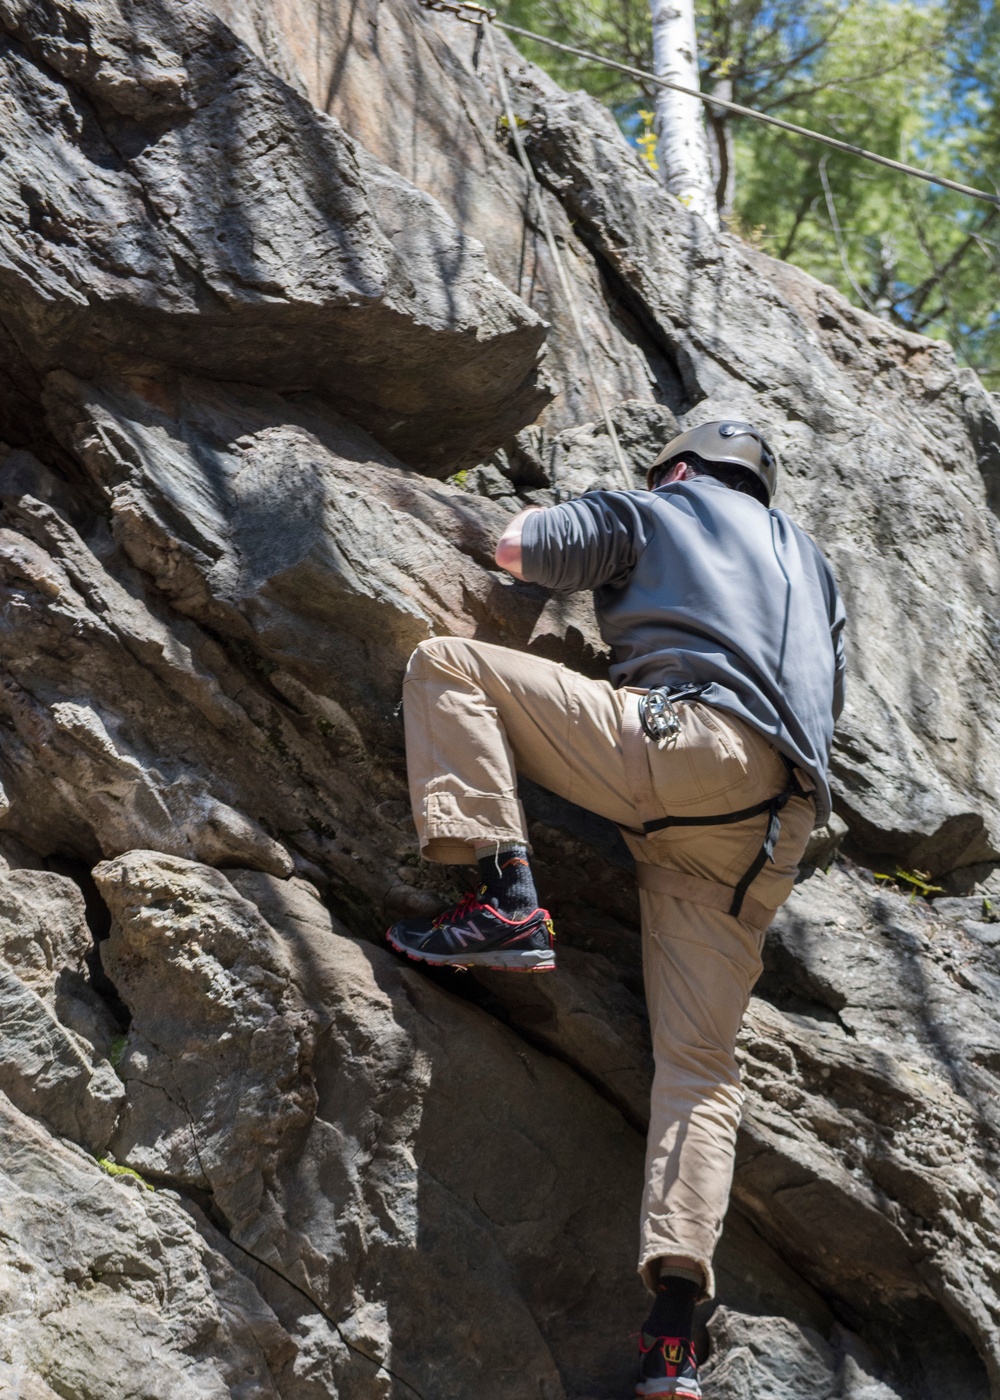 Climbing the Rock Face